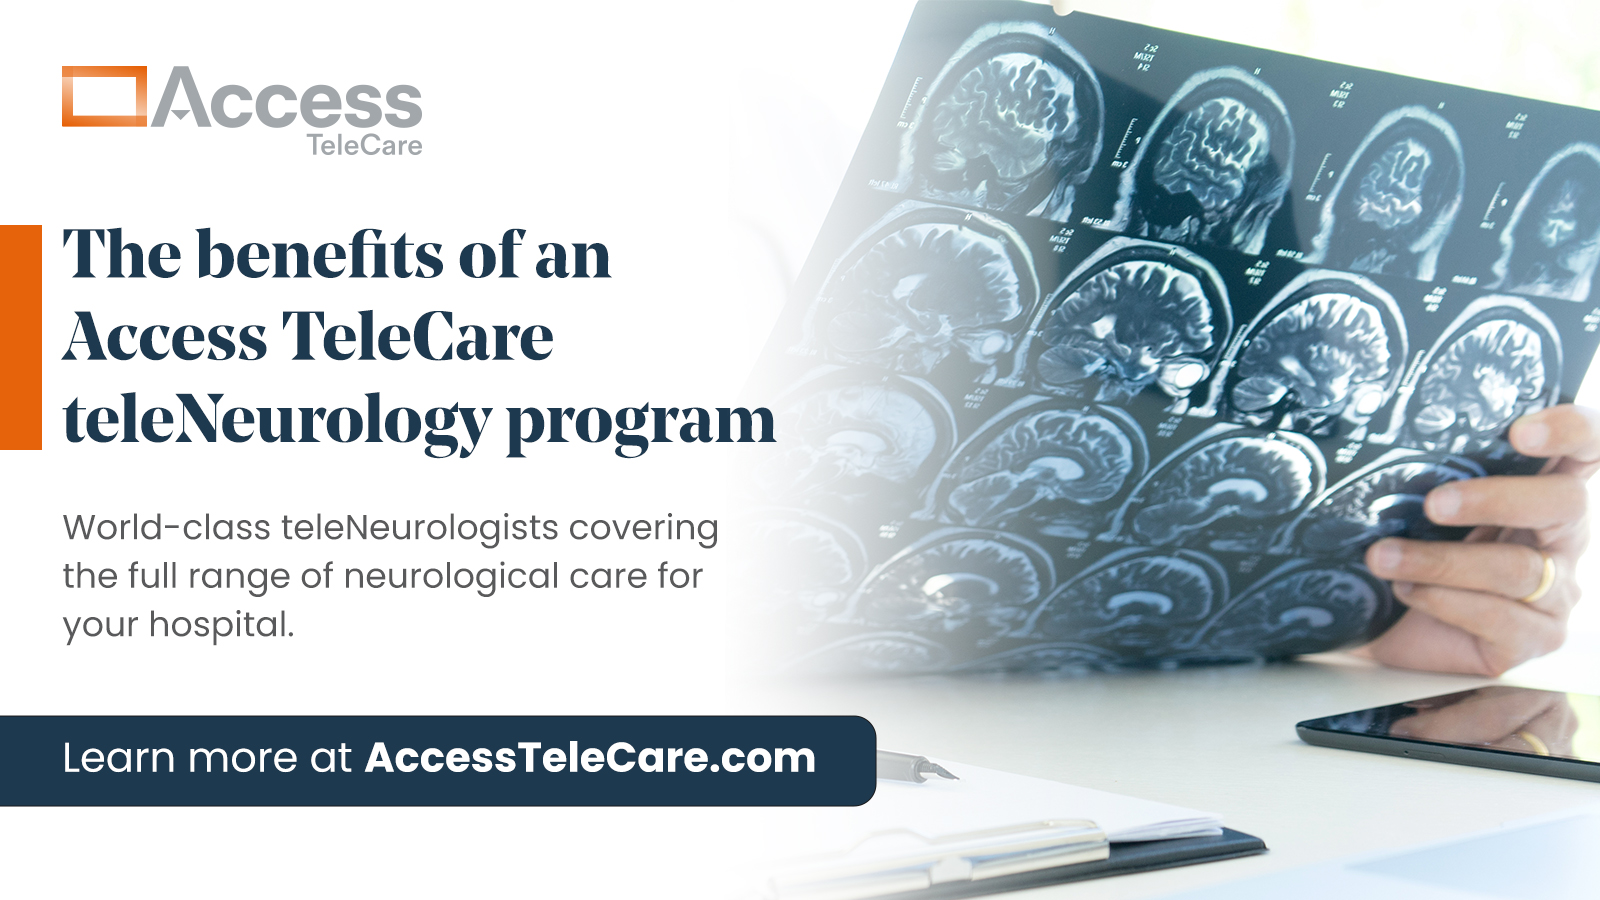 Benefits of an Access TeleCare teleNeurology program. World-class teleNeurologists covering full range of neurological care